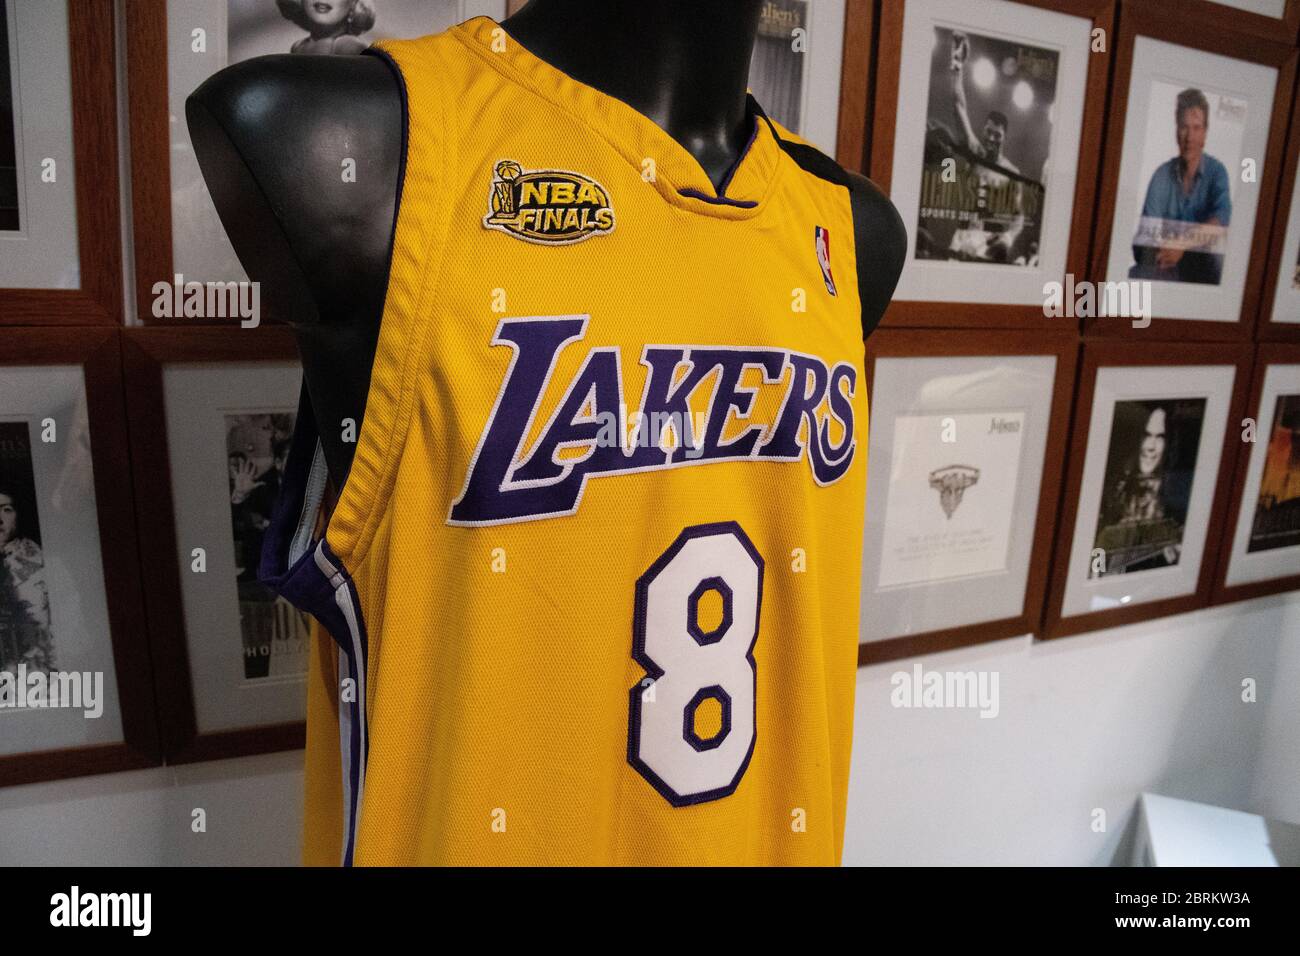 Los Ángeles, EE.UU. 18 de mayo de 2020. Una camiseta y un pantalón del  jugador de baloncesto estadounidense Kobe Bryant estarán en exhibición en  una sala de exposiciones junto con otros artículos